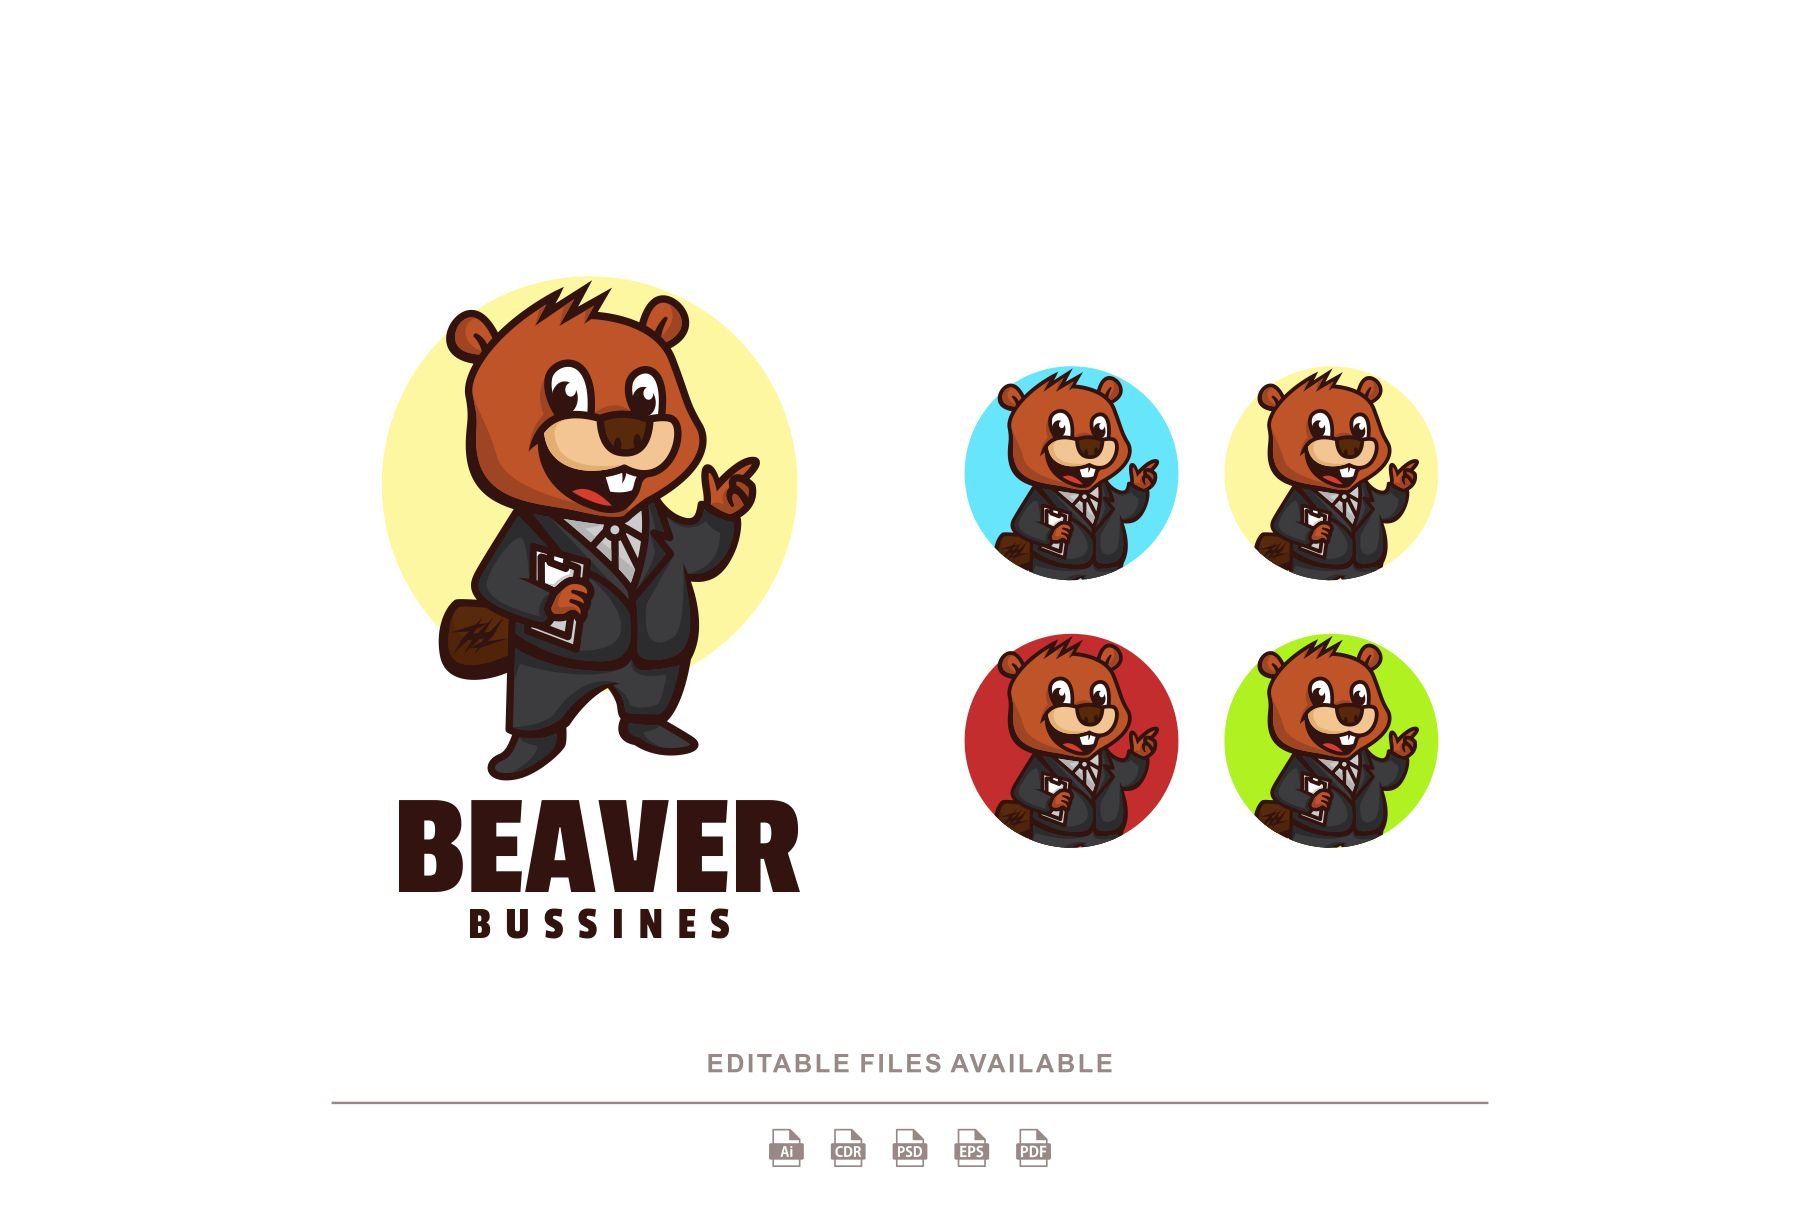 Beaver Business Cartoon Mascot Logo cover image.